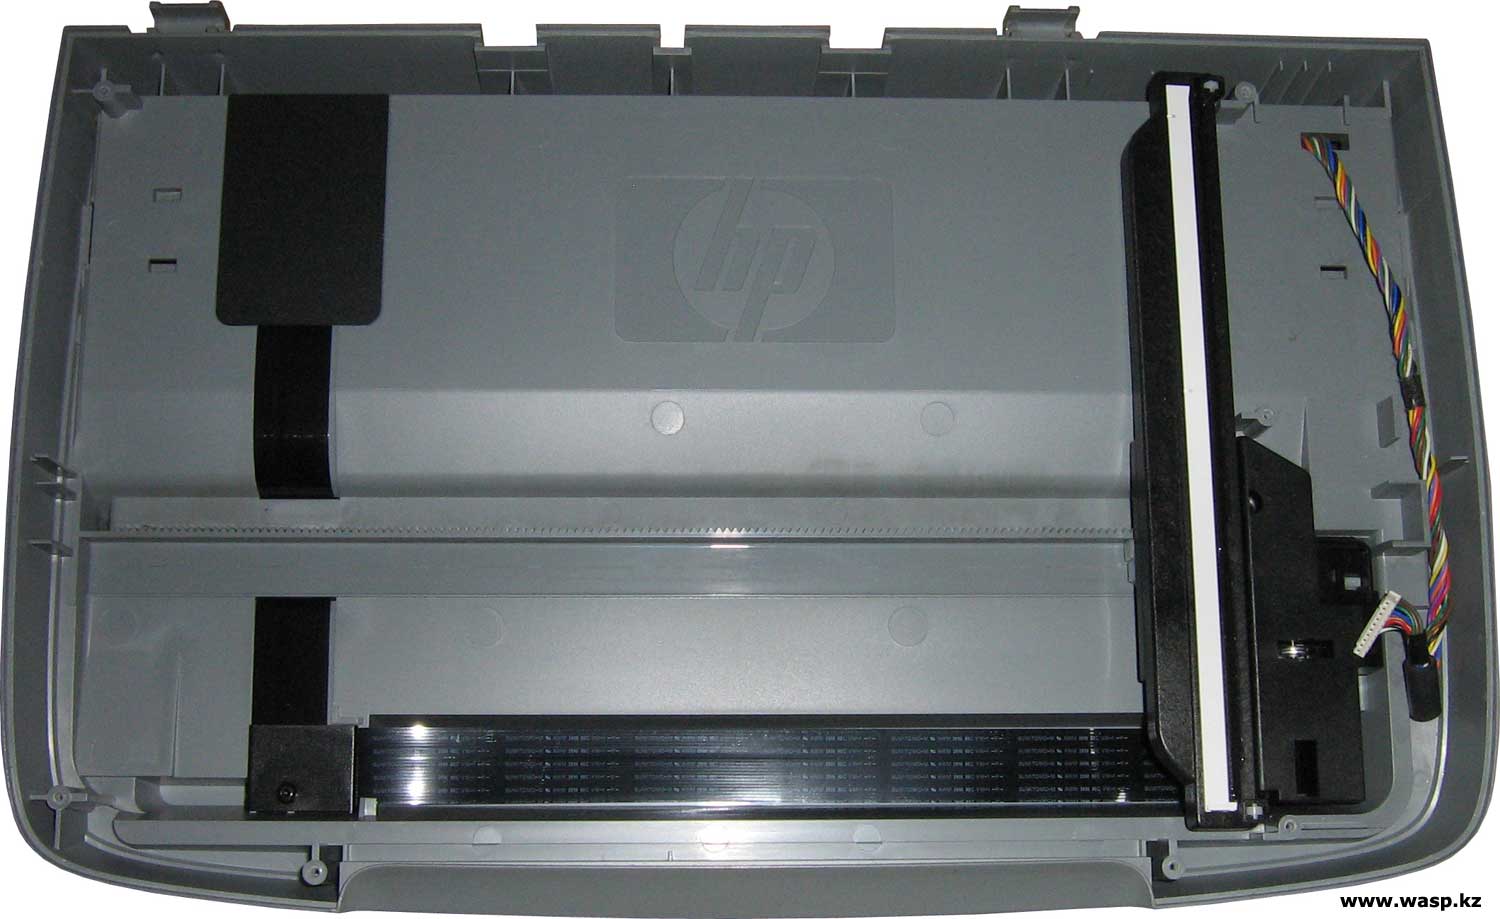 HP PSC1613 устройство сканера ремонт и разборка